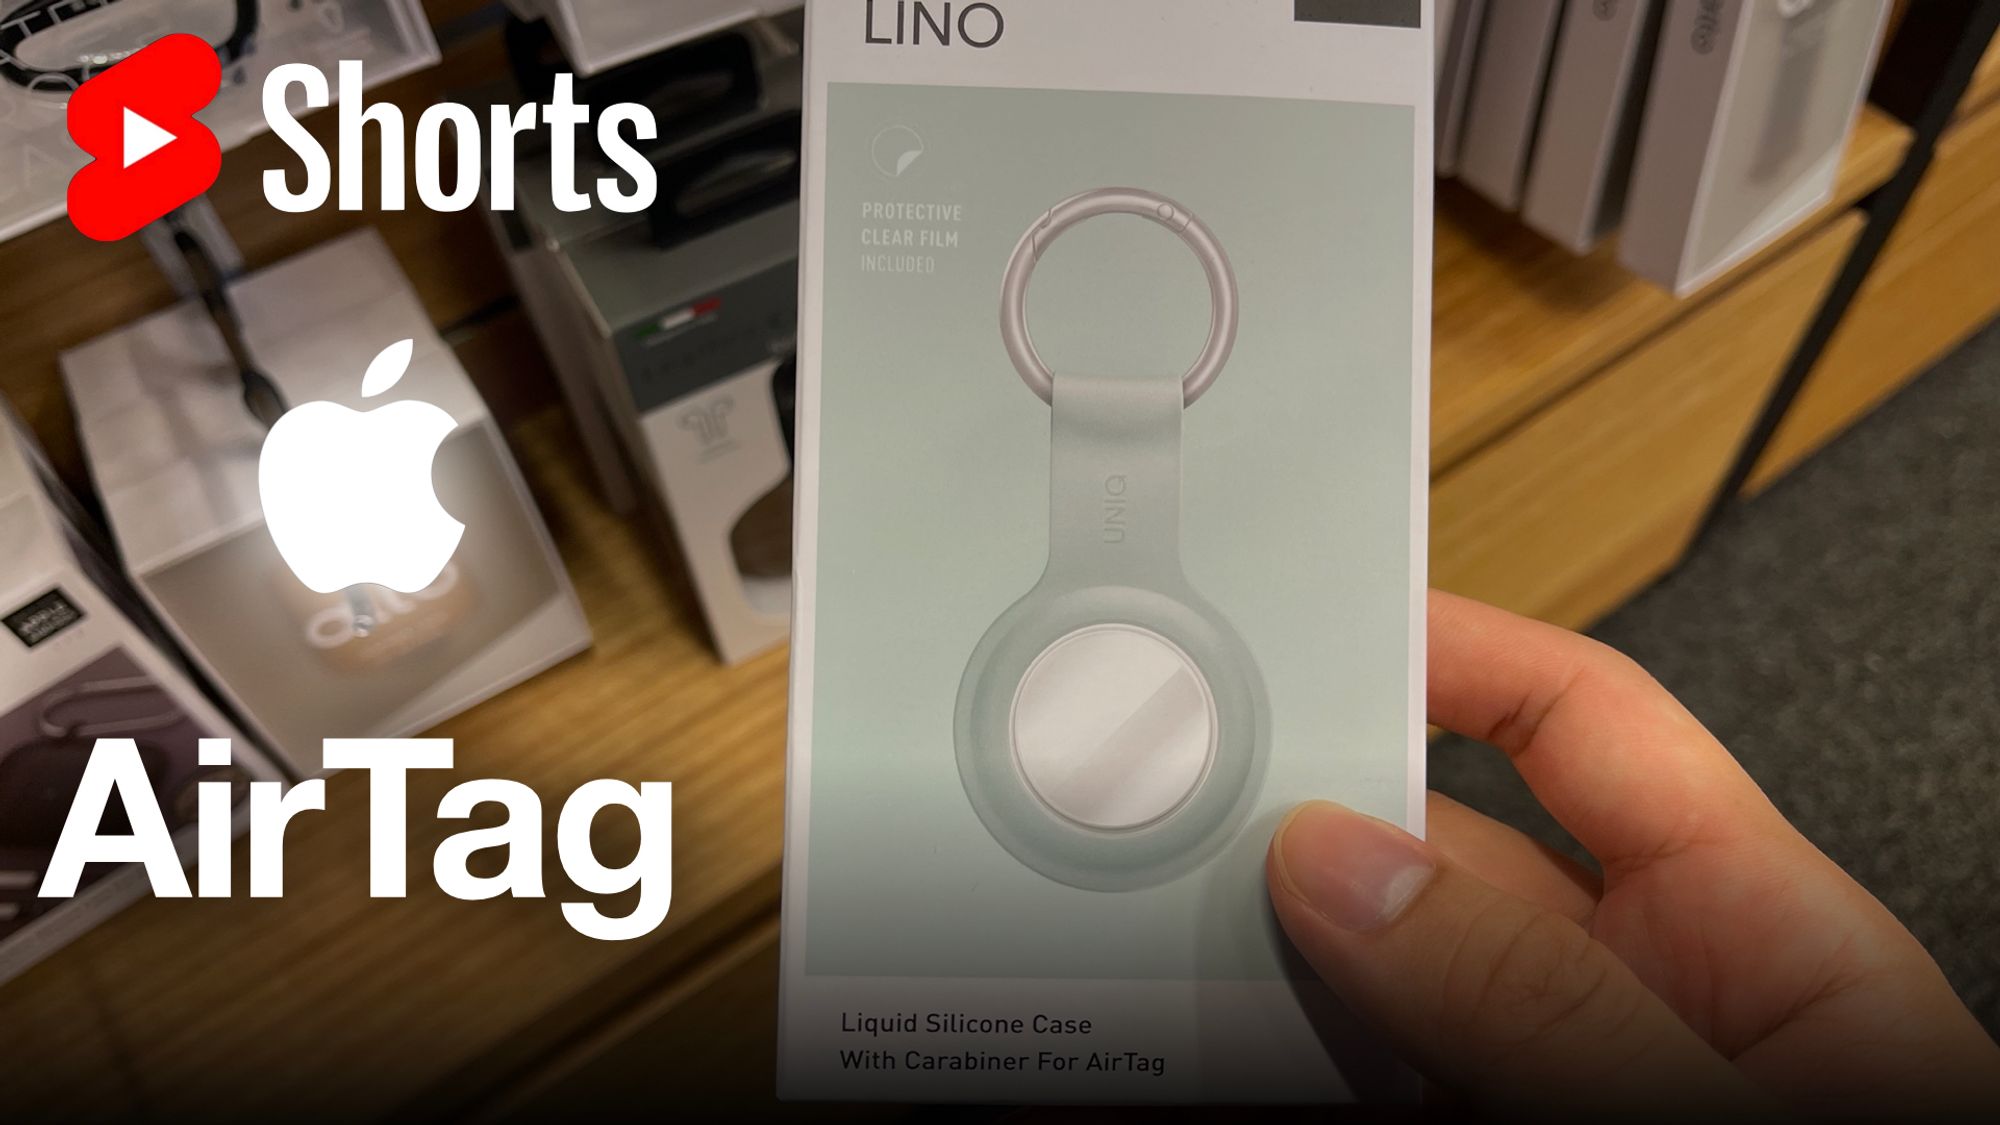 UNIQ Lino: Apple AirTag 矽膠保護套